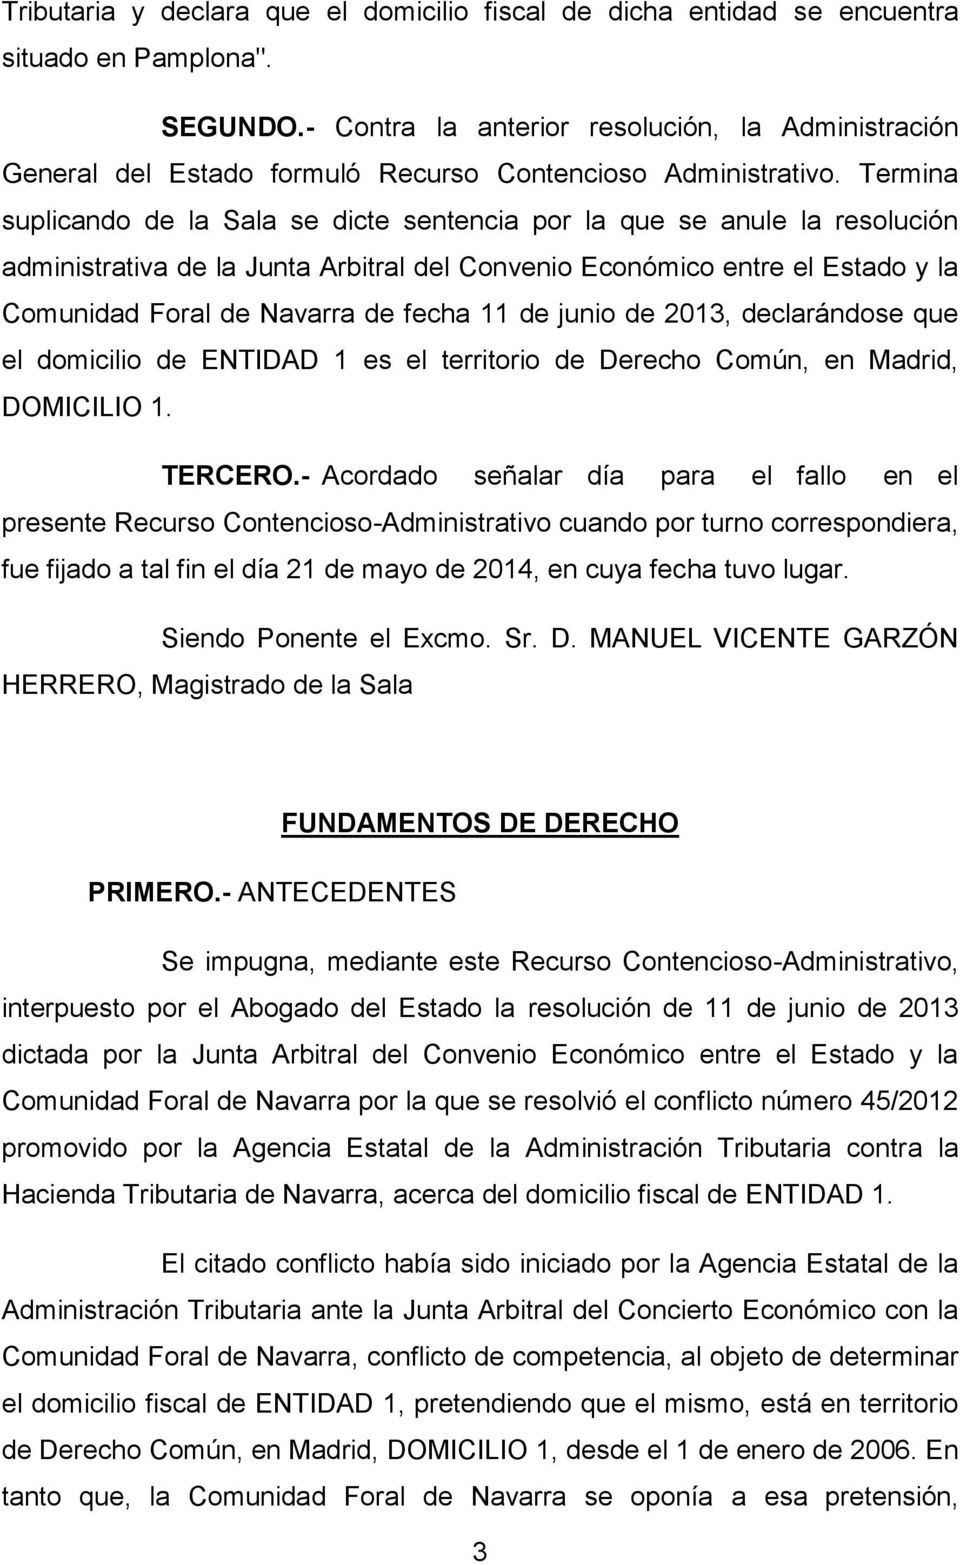 Termina suplicando de la Sala se dicte sentencia por la que se anule la resolución administrativa de la Junta Arbitral del Convenio Económico entre el Estado y la Comunidad Foral de Navarra de fecha